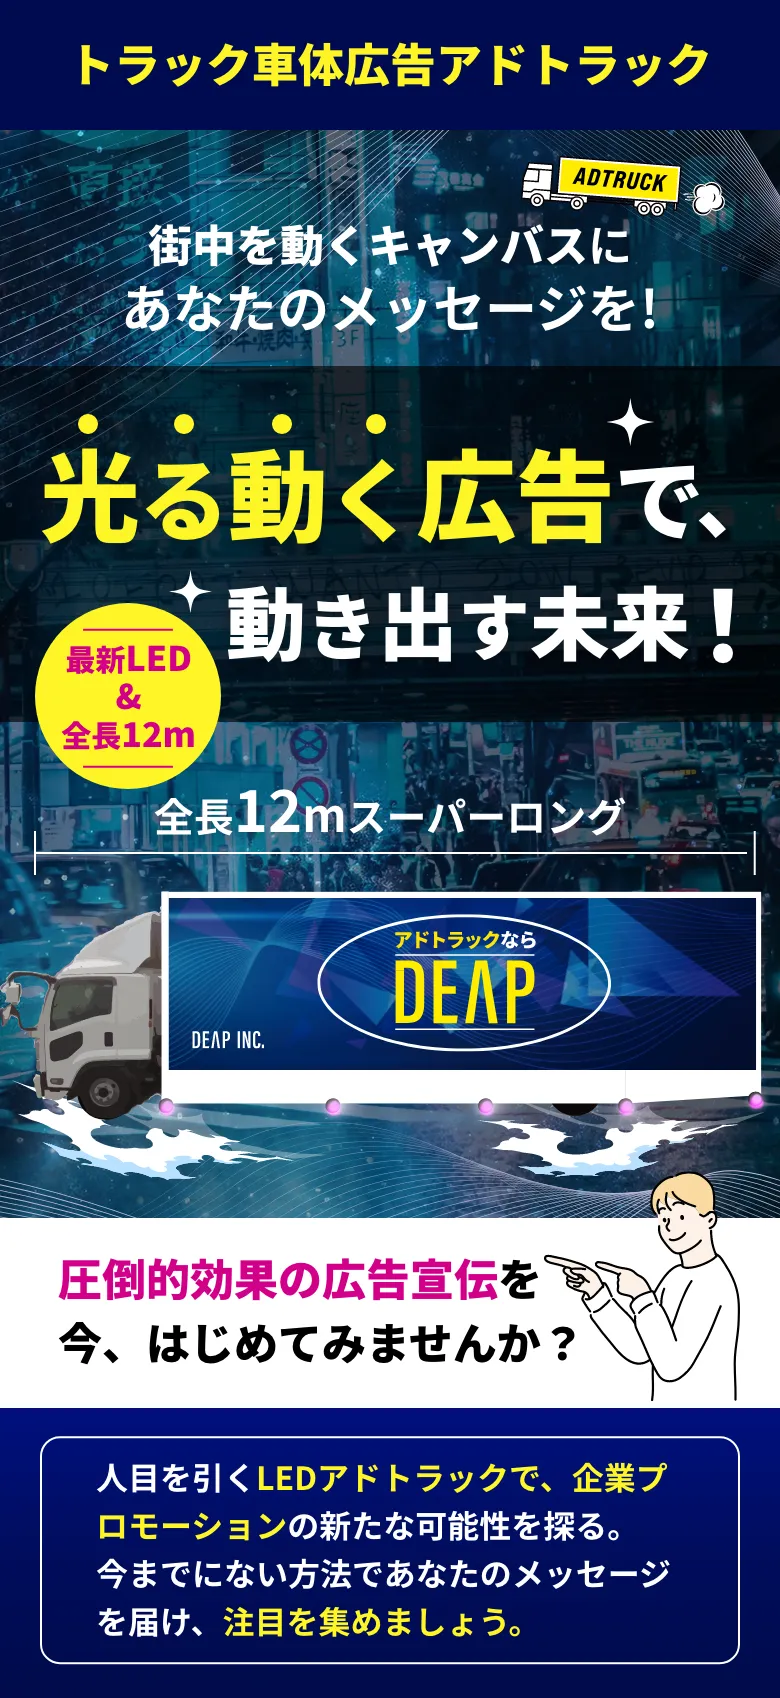 トラック車体広告アドトラック Project by DEAP